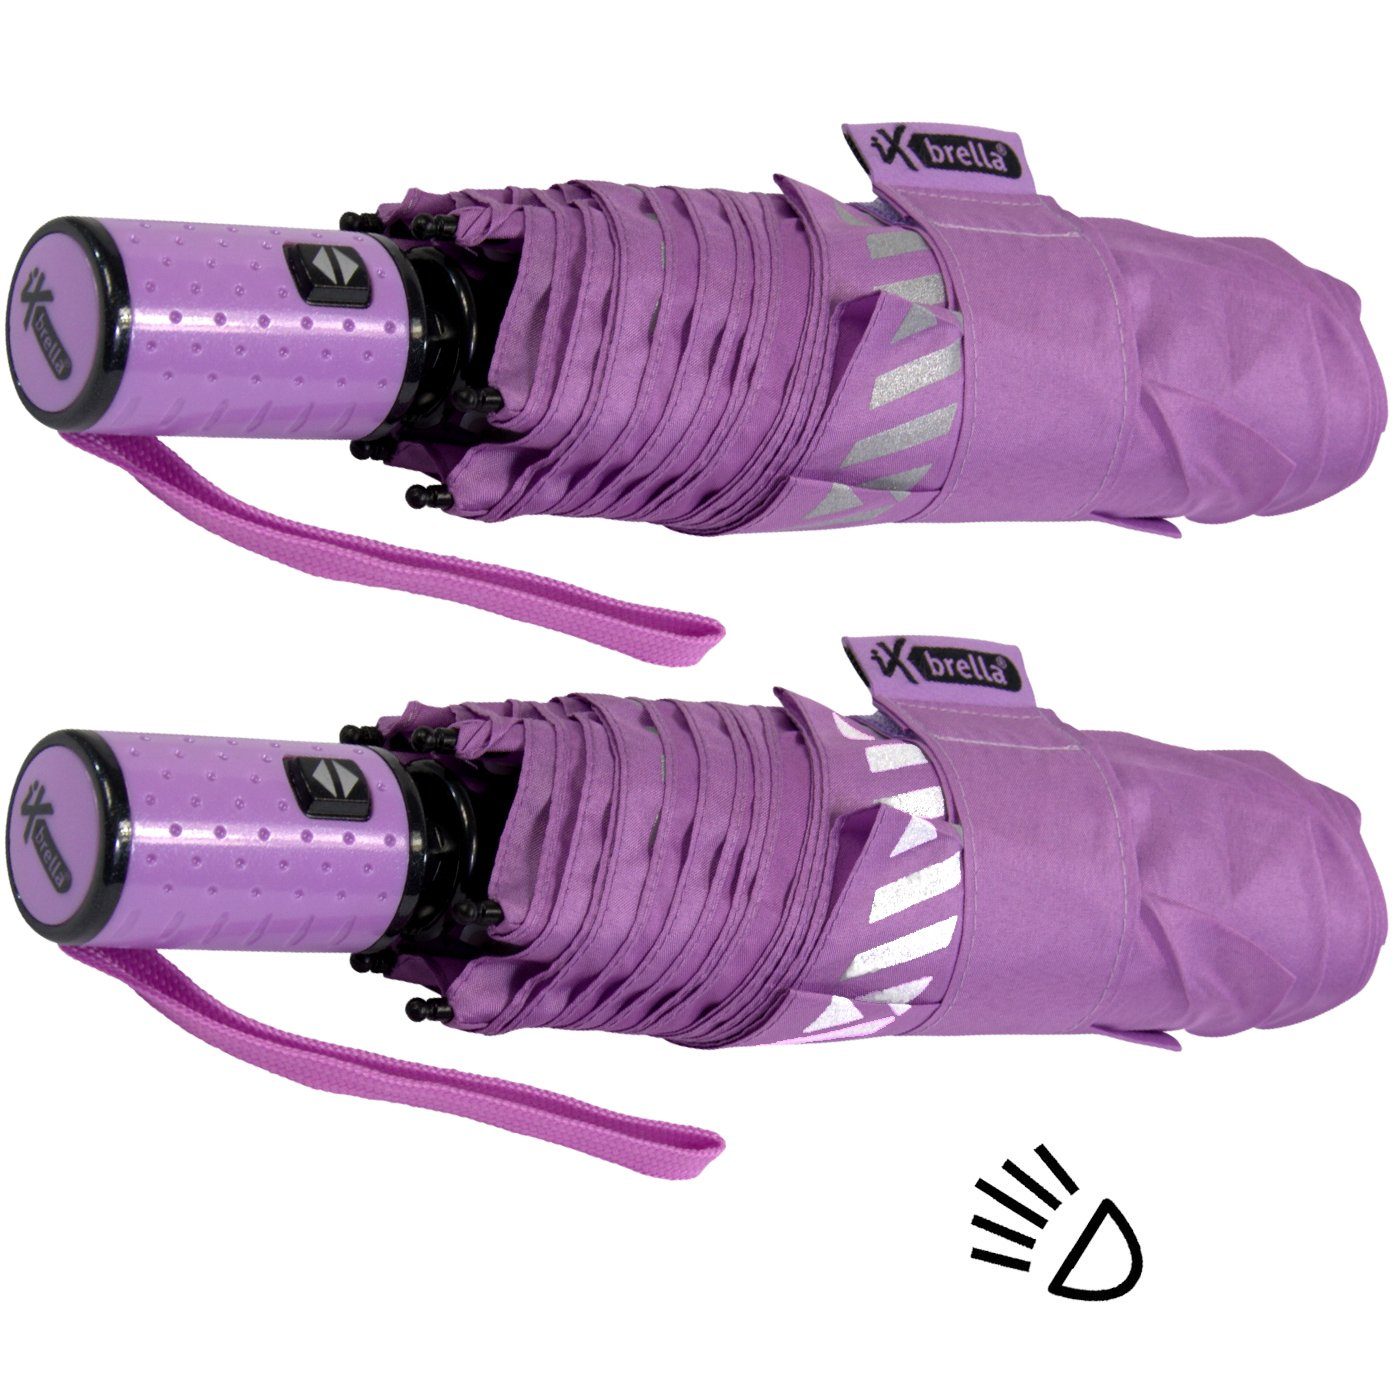 Reflex-Streifen reflektierend, mit iX-brella Sicherheit hell-lila Taschenregenschirm - Kinderschirm Auf-Zu-Automatik, durch